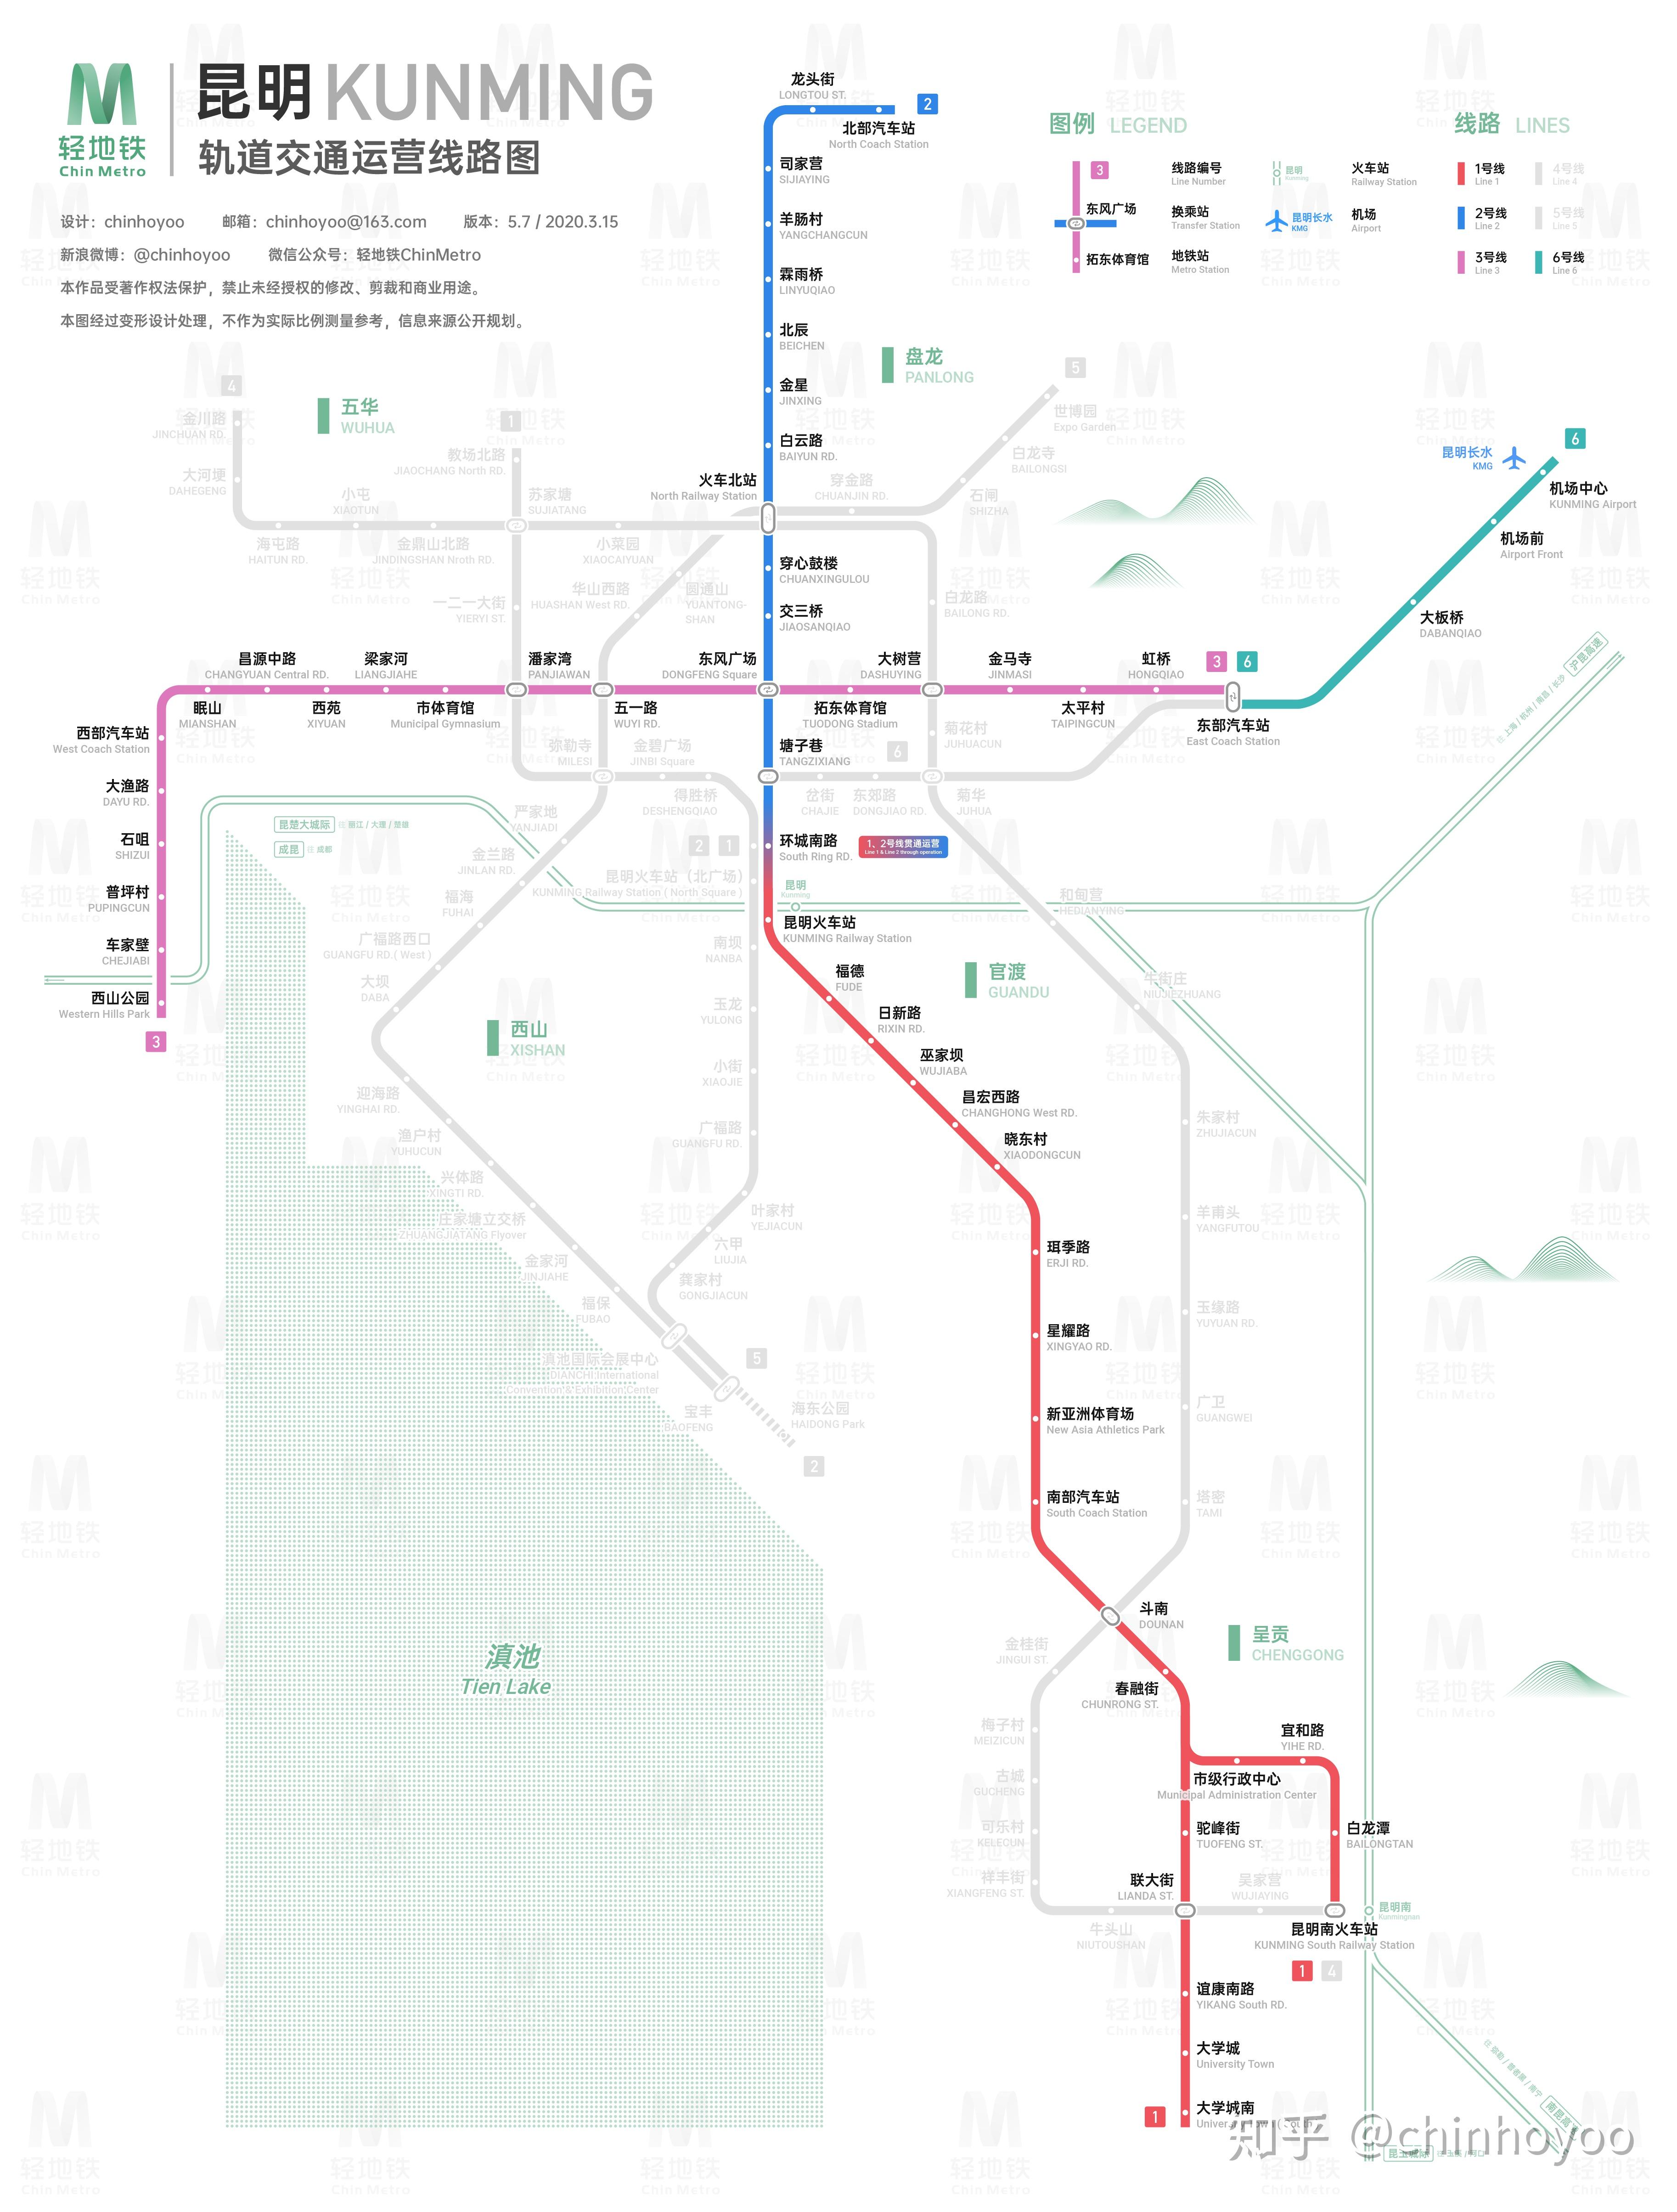 昆明地铁线路图_运营时间票价站点_查询下载|地铁图